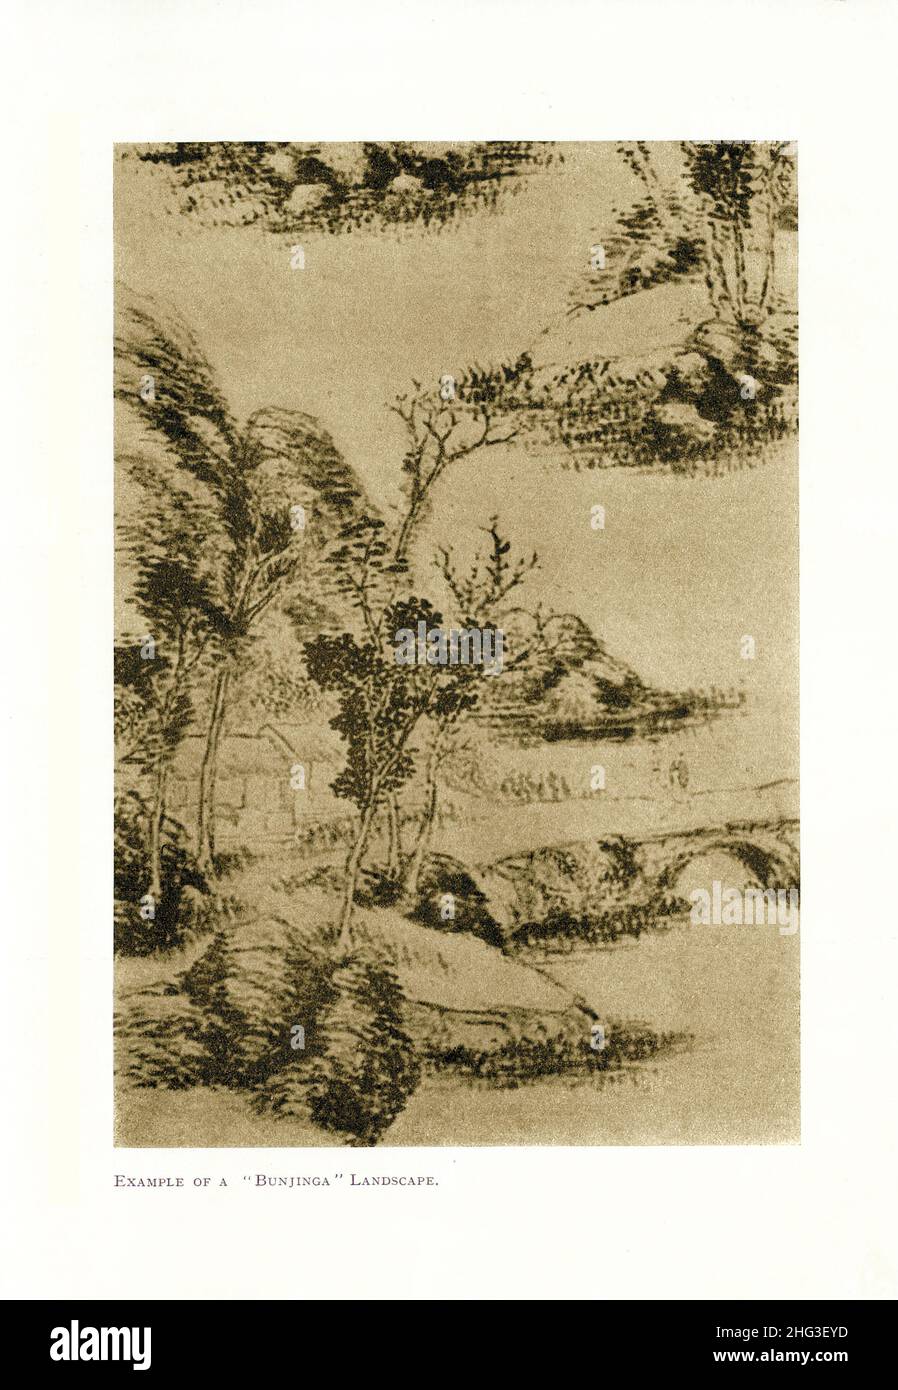 Peinture chinoise vintage : exemple de paysage 'Bunjinga'.Reproduction de l'illustration du livre de 1912 Nanga (peinture japonaise) 'peinture suranci', Banque D'Images